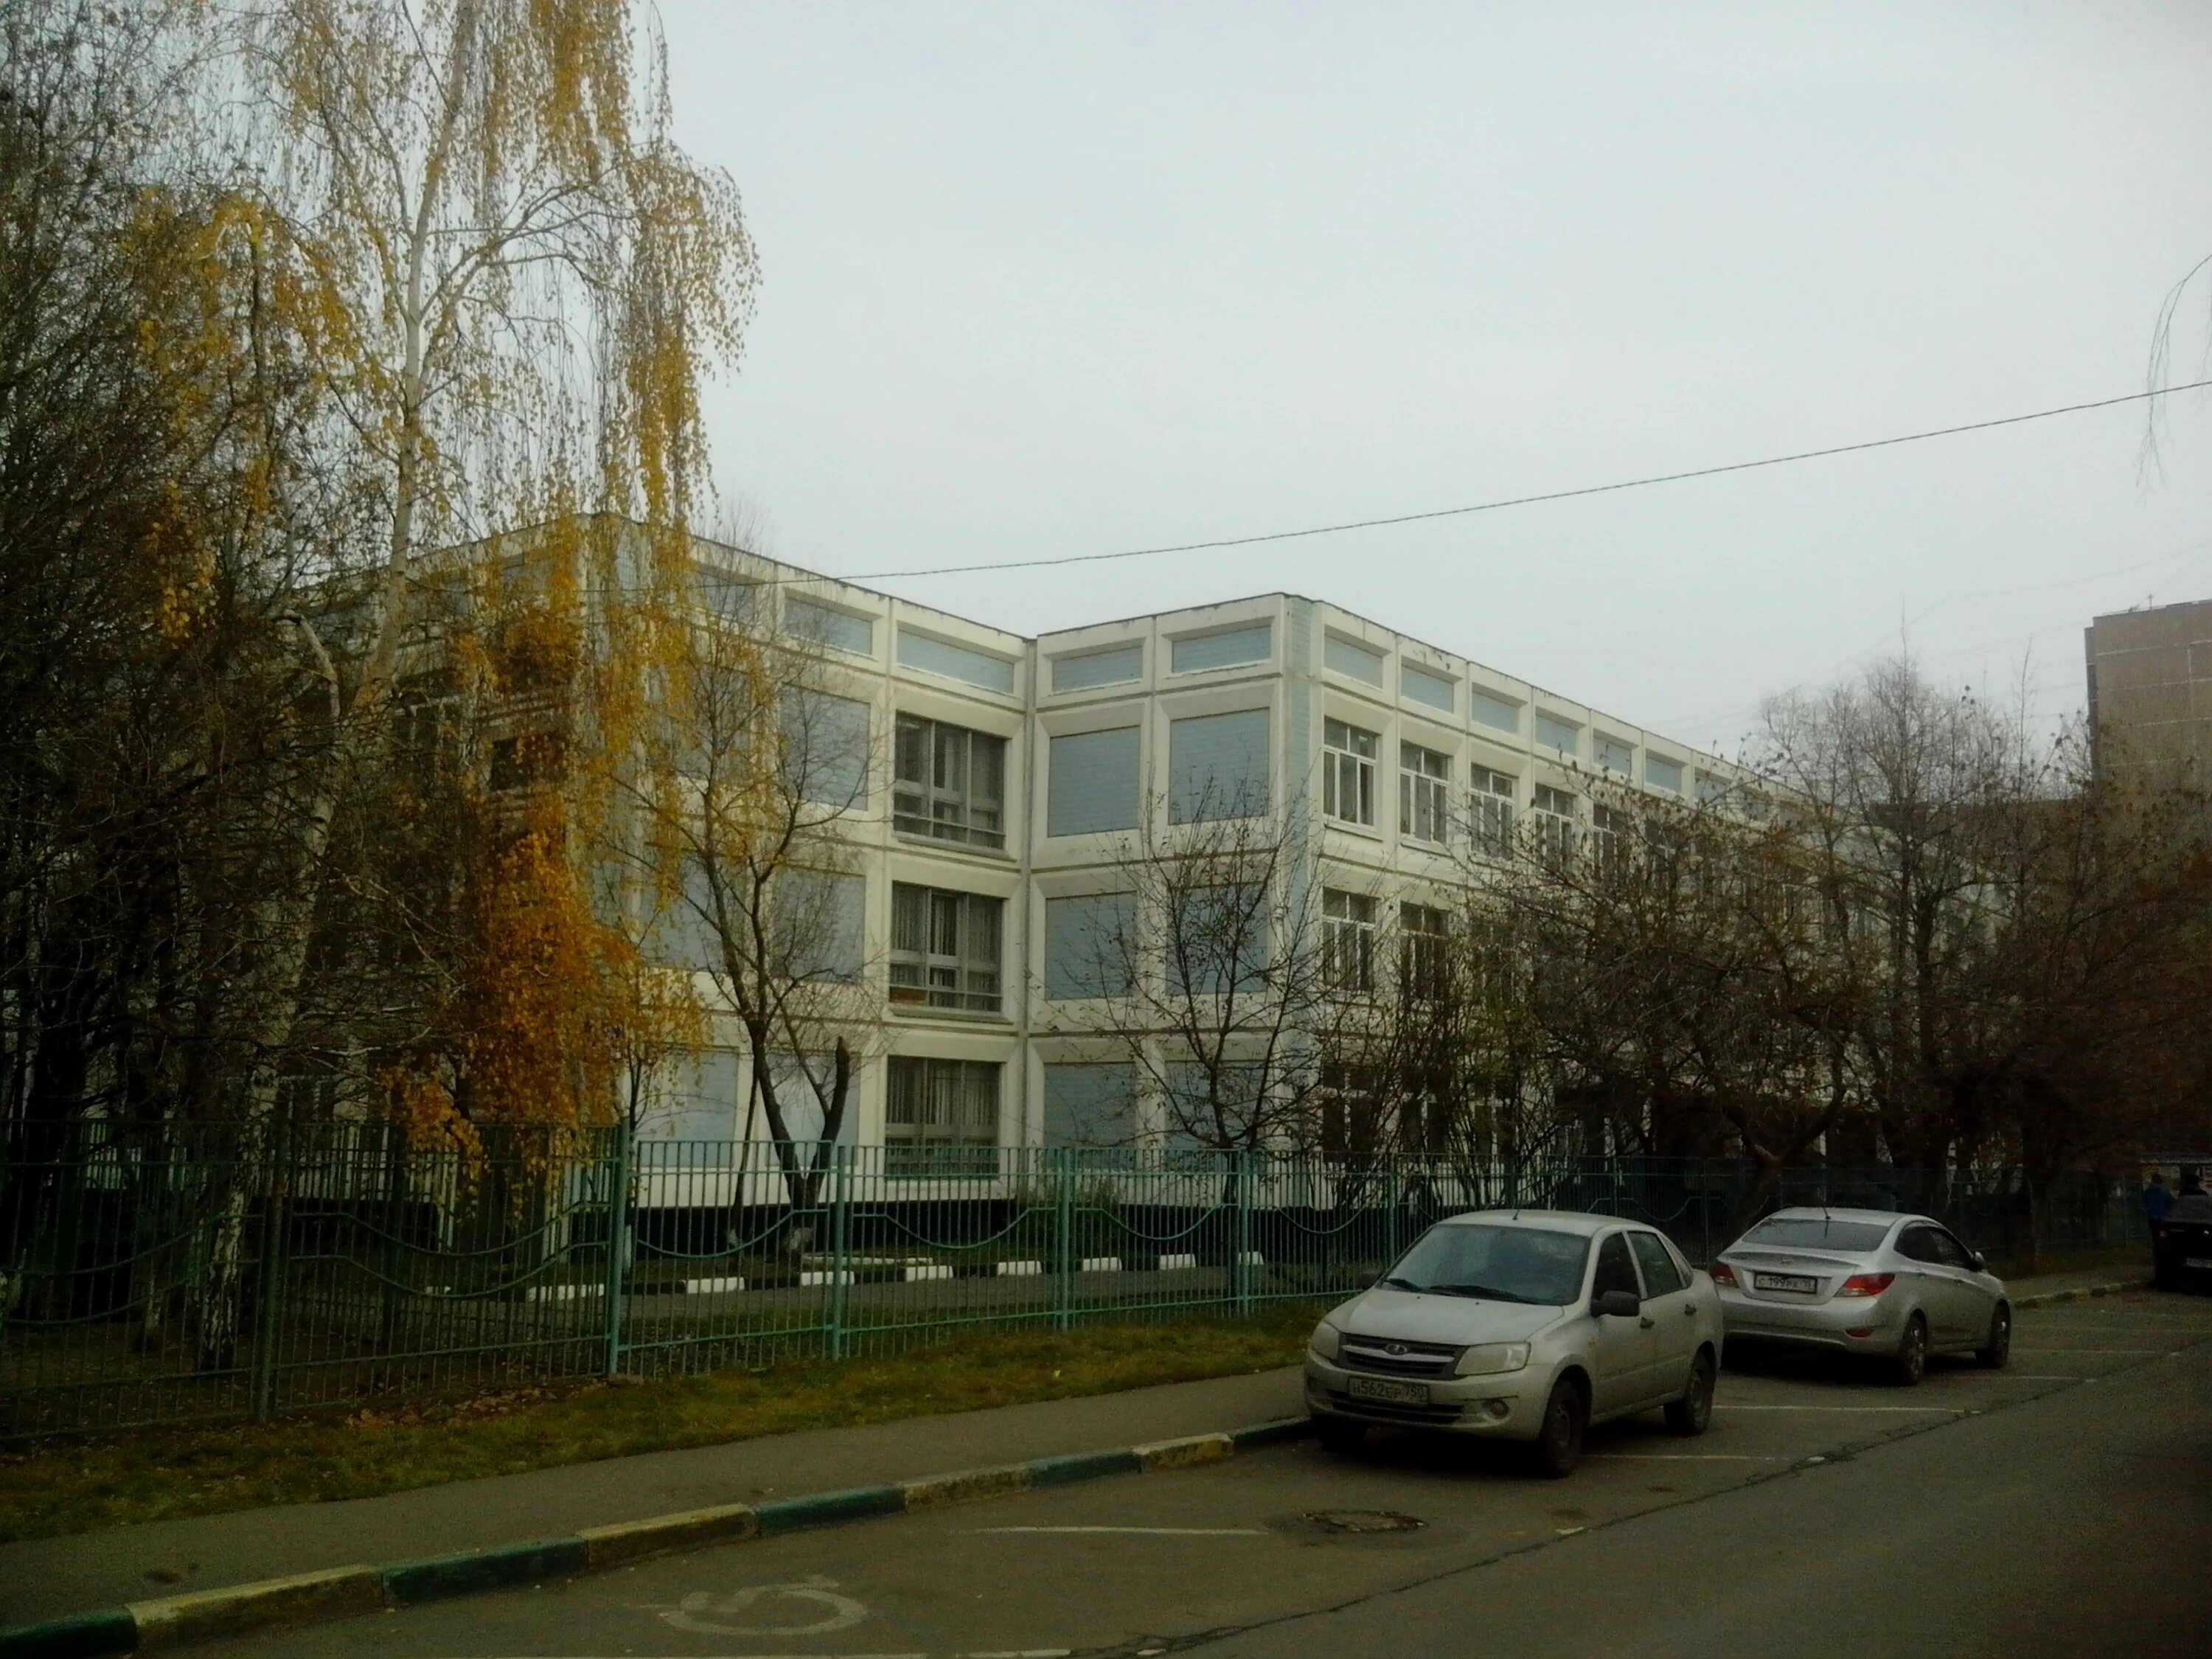 Школа 1591 Новокосино. Новокосинская 41 школа 1591. 1591 Школа Москва Новокосинская улица. Школа 1591 3 корпус.